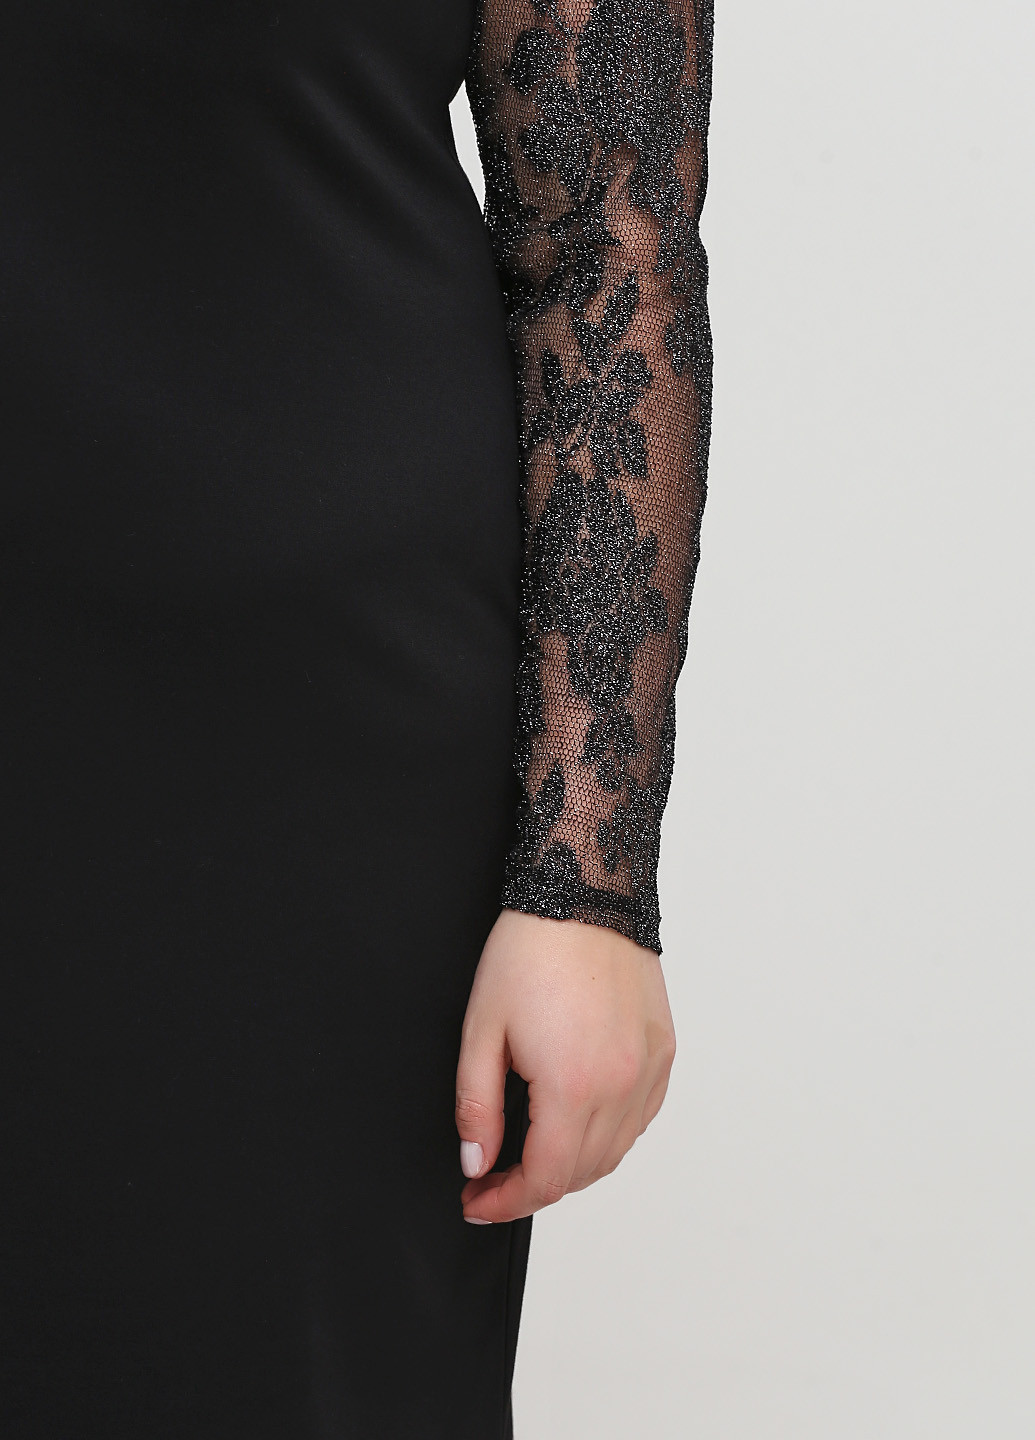 Черное коктейльное платье футляр Алеся однотонное